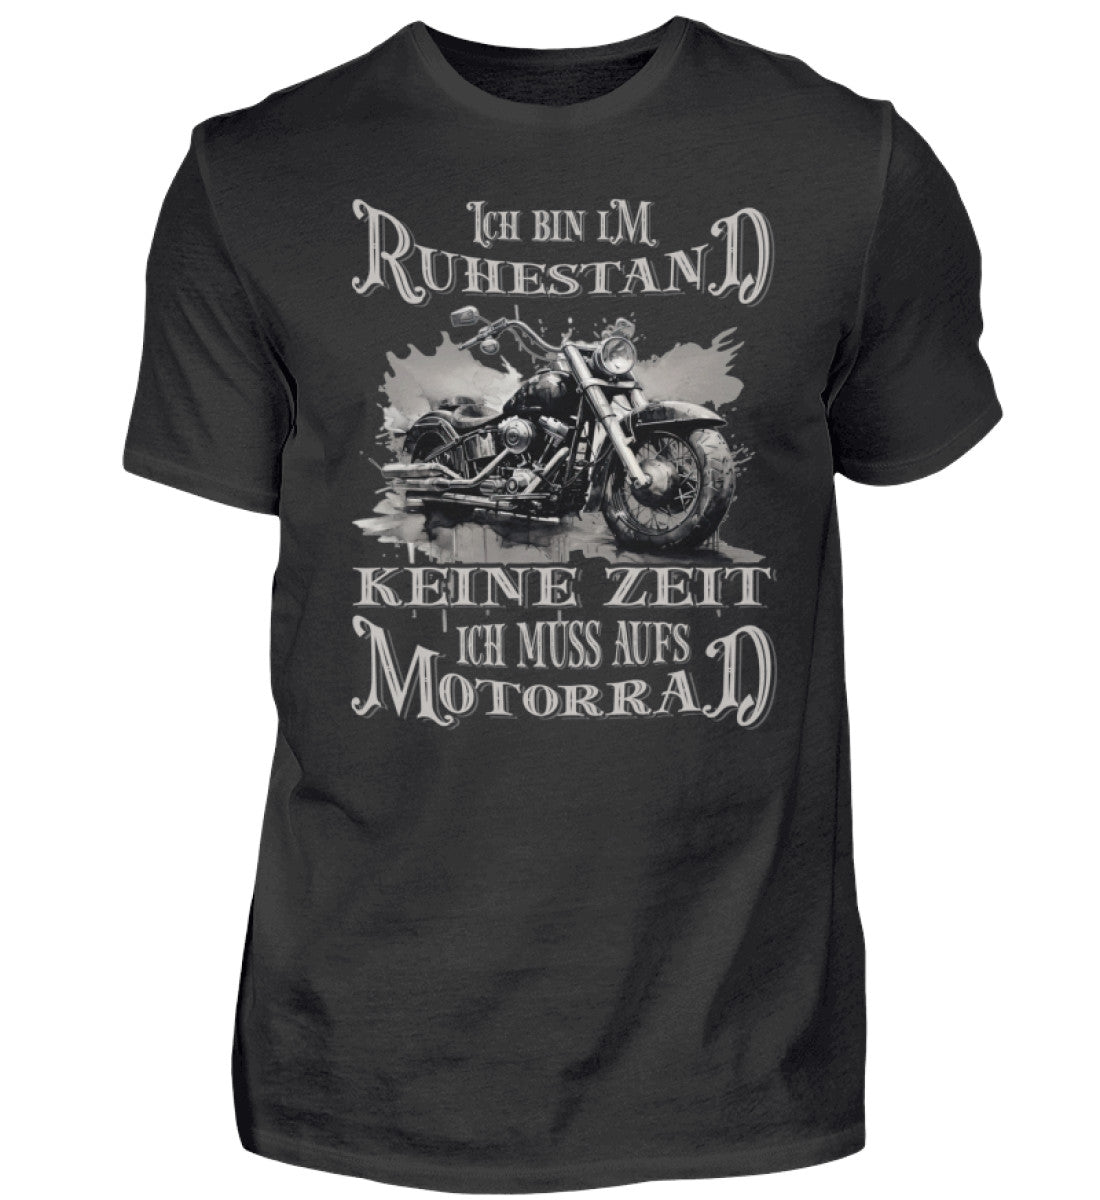 Ein Biker T-Shirt für Motorradfahrer von Wingbikers mit dem Aufdruck, Ich bin im Ruhestand - Keine Zeit - Ich muss aufs Motorrad, in schwarz.